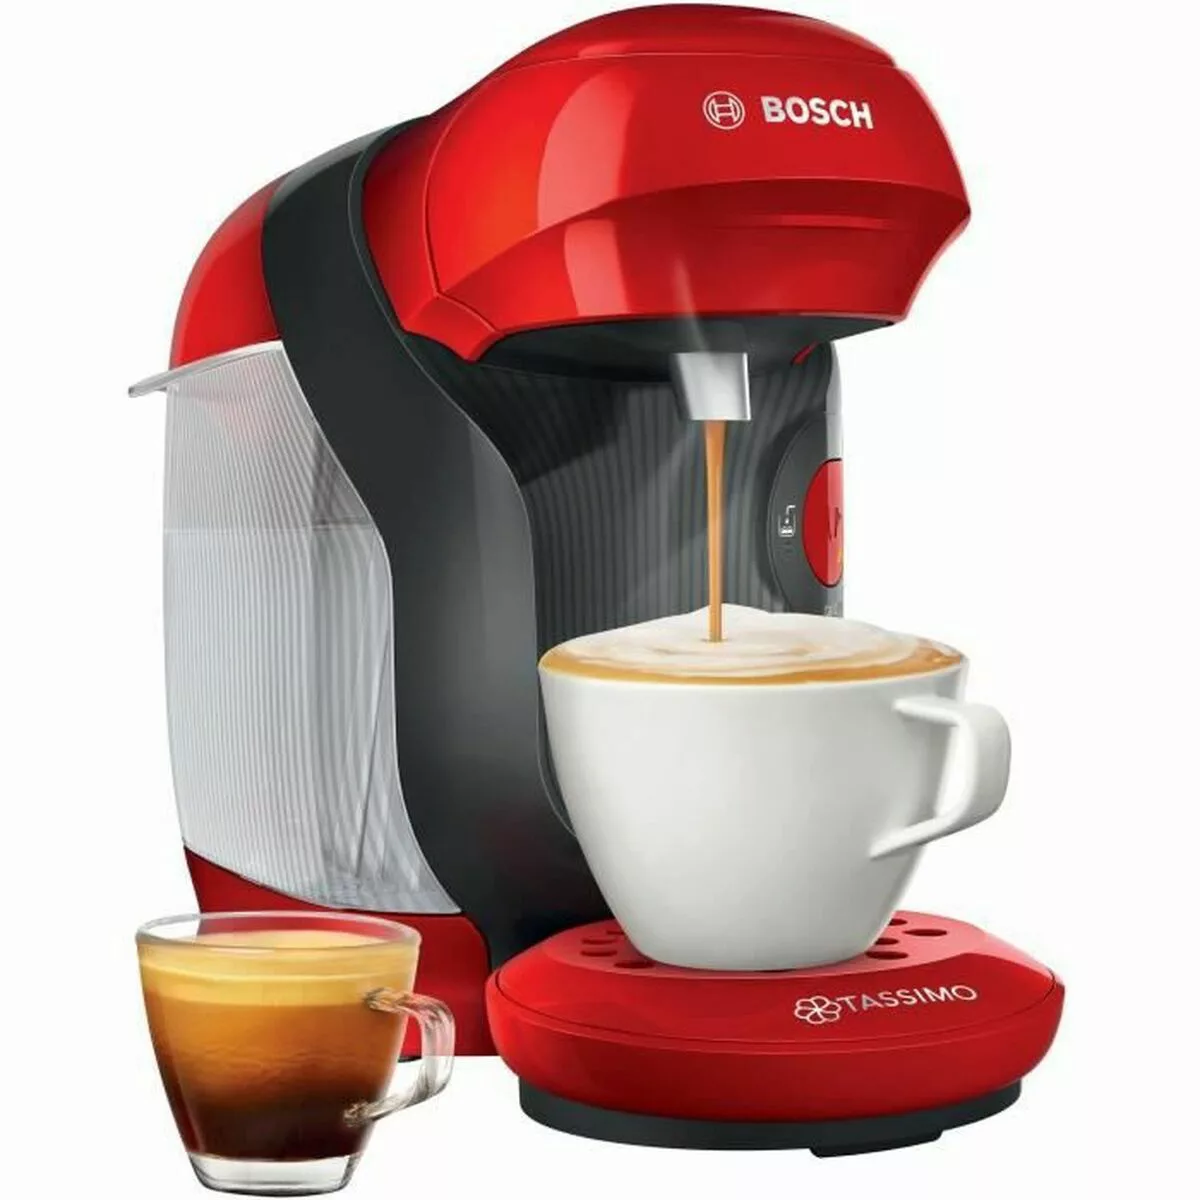 Kapsel-kaffeemaschine Bosch Tas1103 1400 W günstig online kaufen